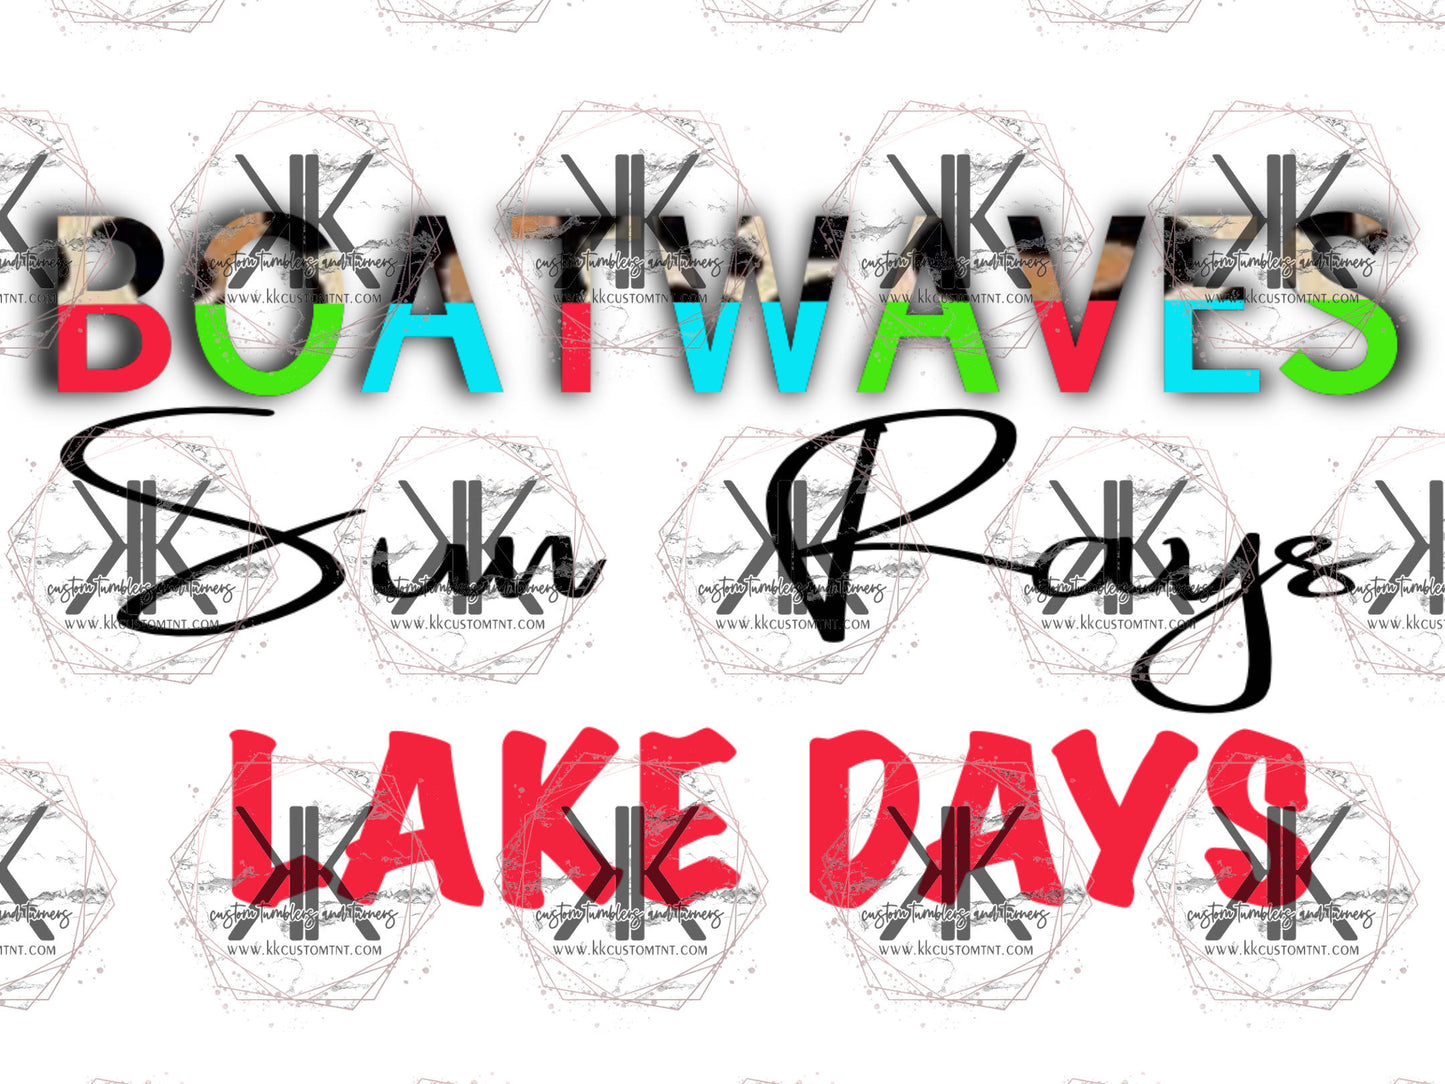 BOAT WAVES**Digital Download Only**